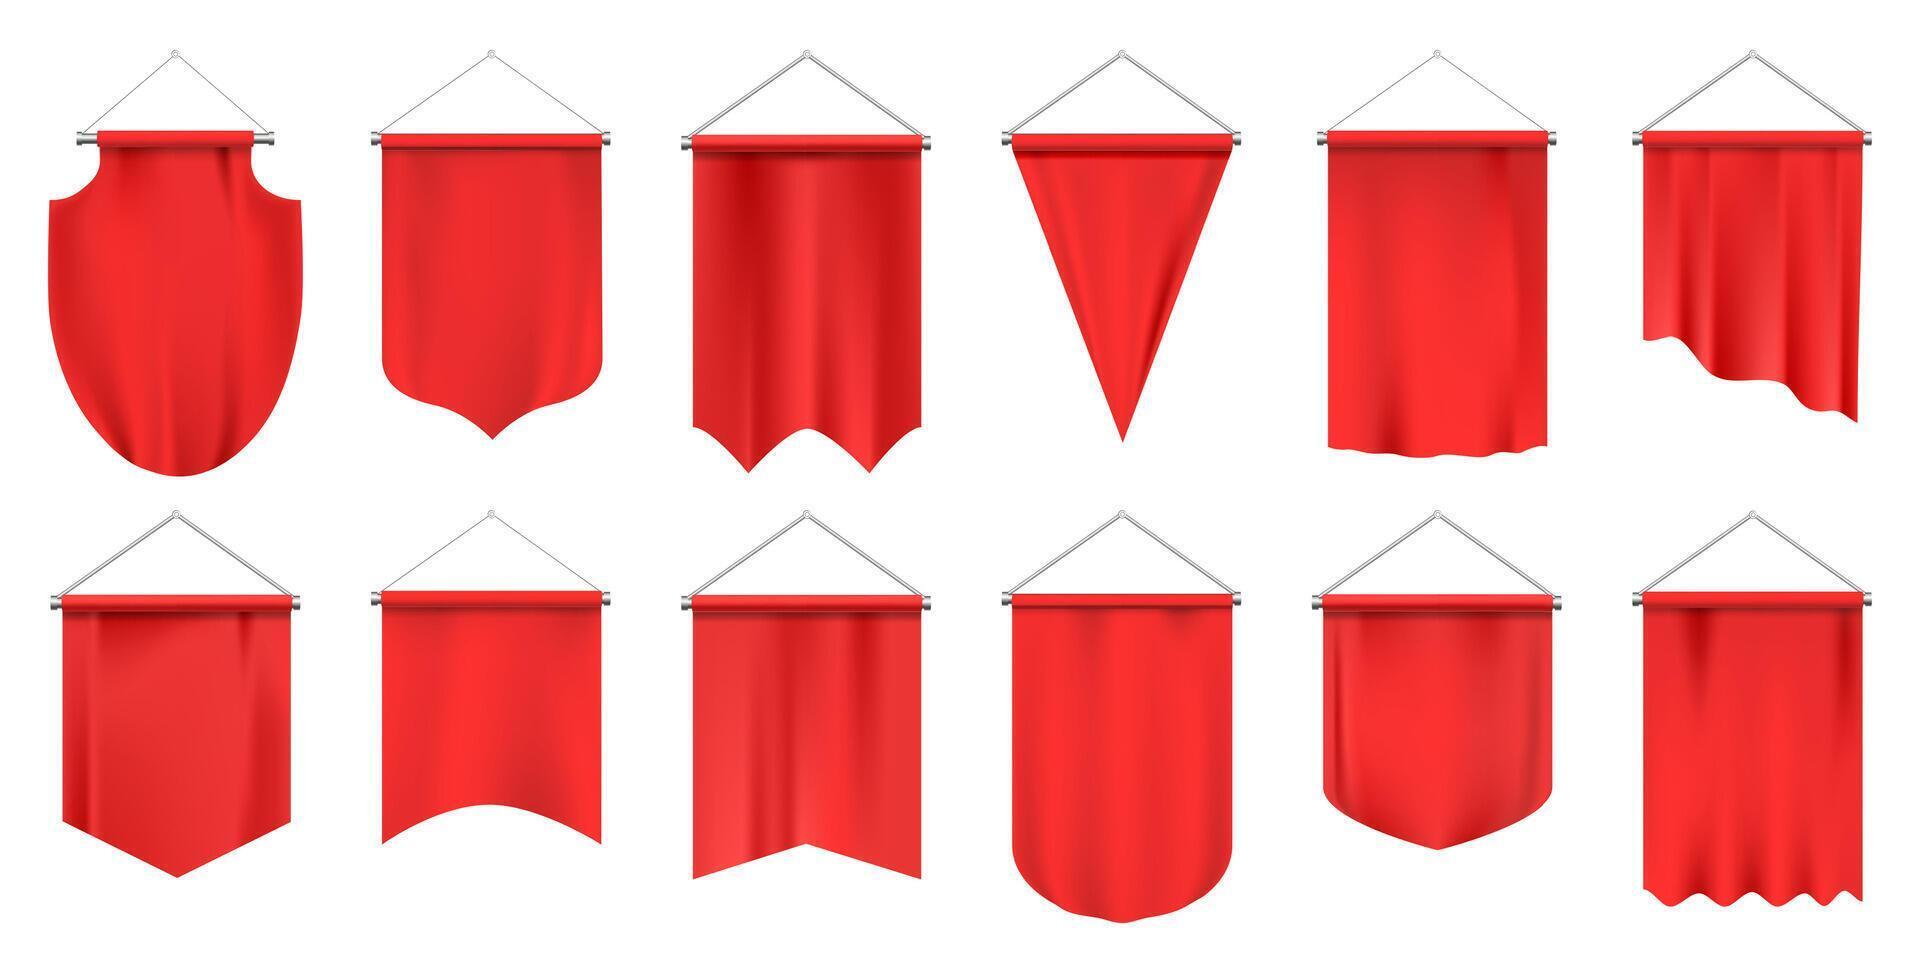 realista textil banderines vacío 3d banderas, rojo tela colgando banderín, publicidad o real premio maquetas aislado vector ilustración conjunto